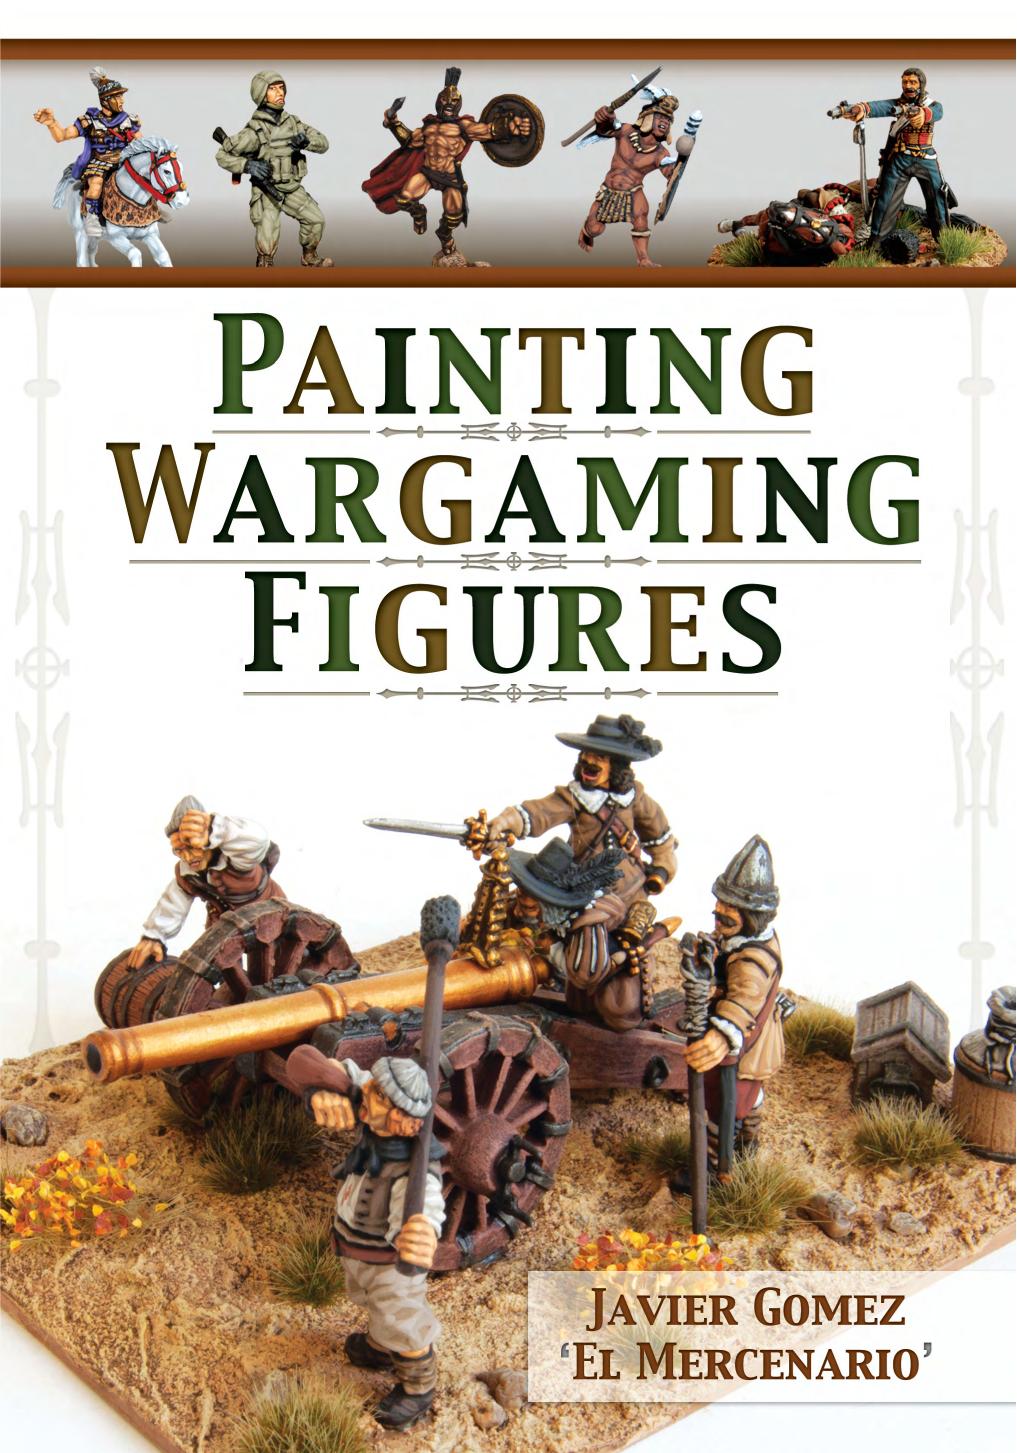 Painting Wargaming Figures by Javier Gomez Valero